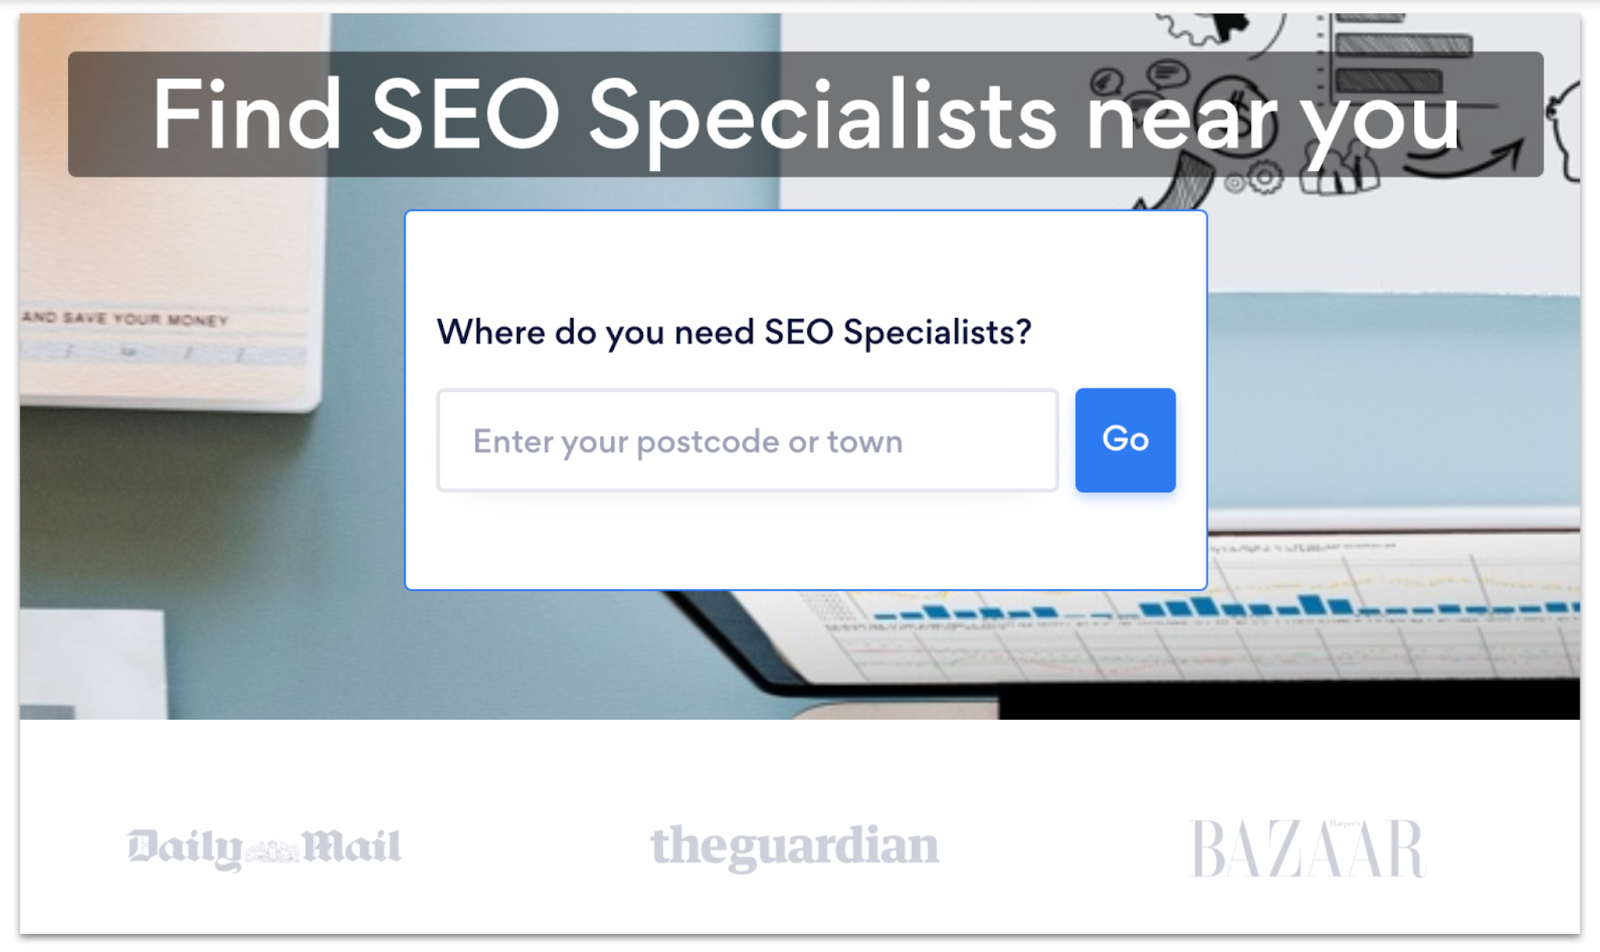 Bark's SEO specialist search box